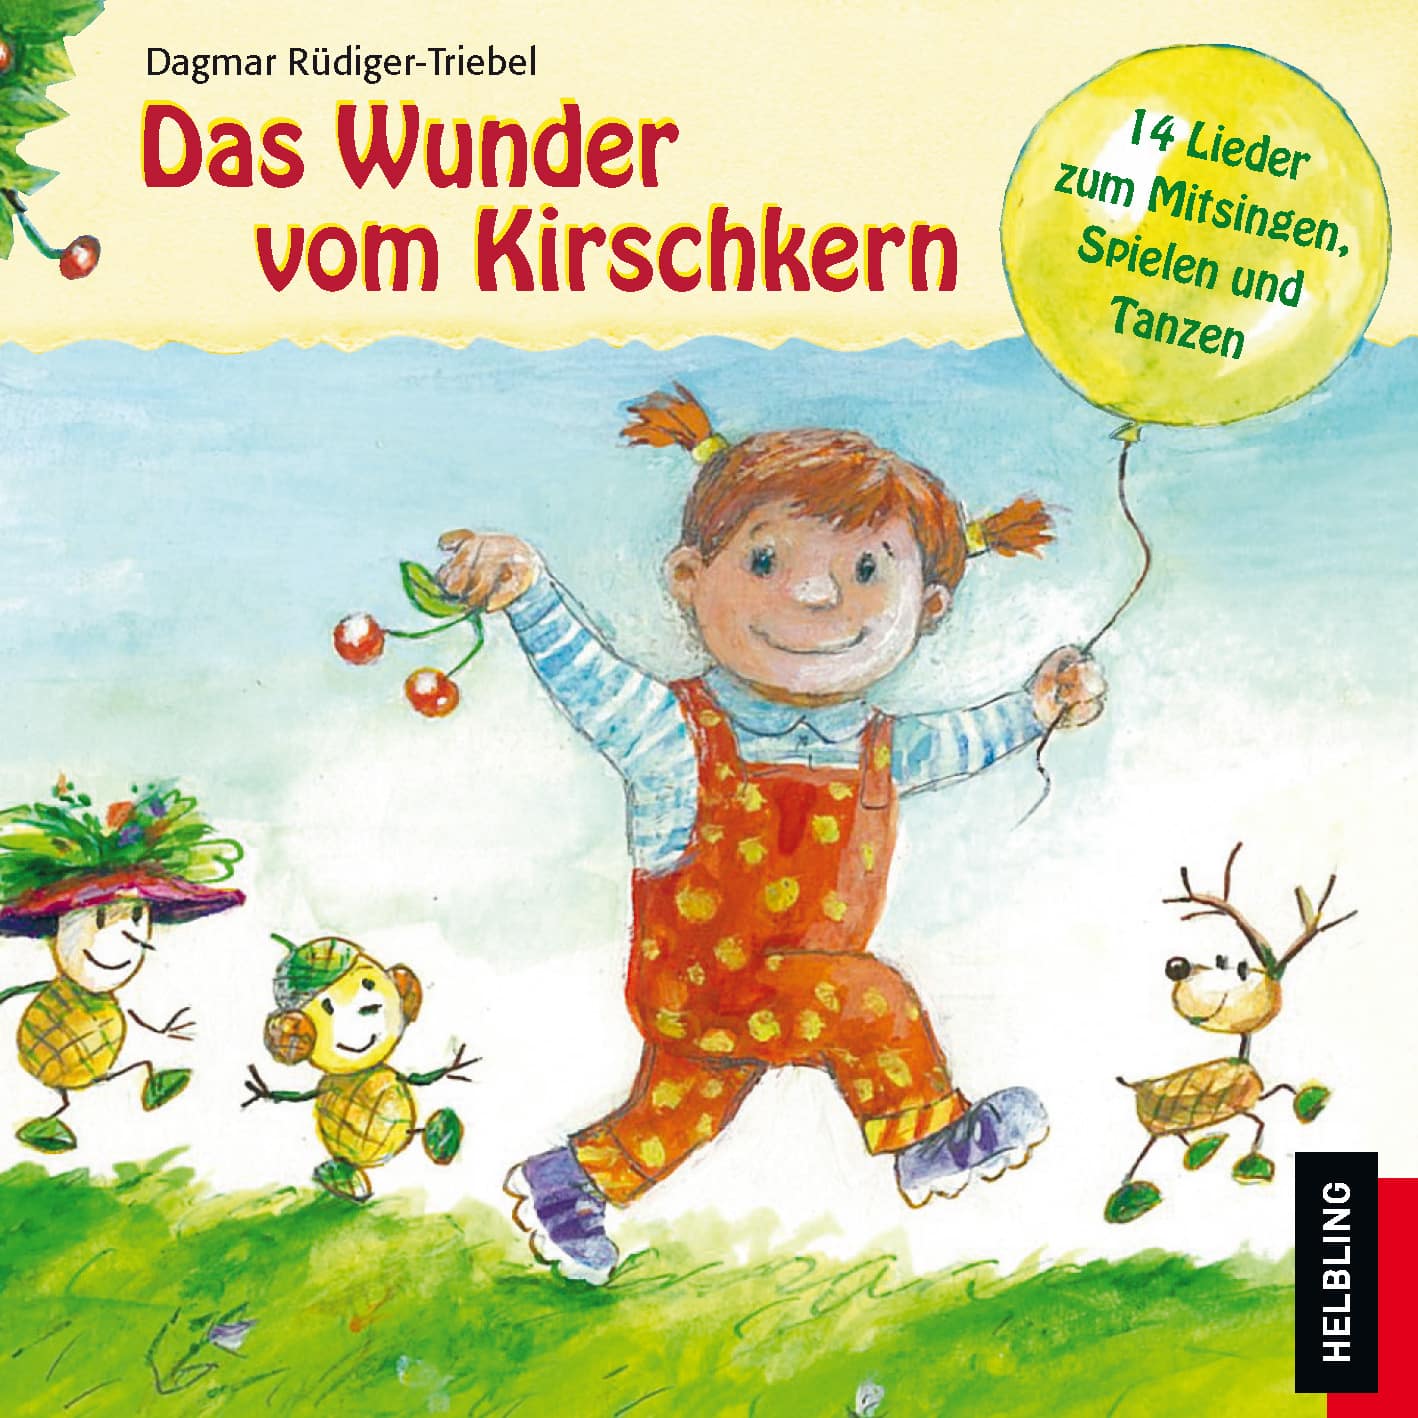 CD mit Musik für Kinder von Dagmar Rüdiger-Triebel